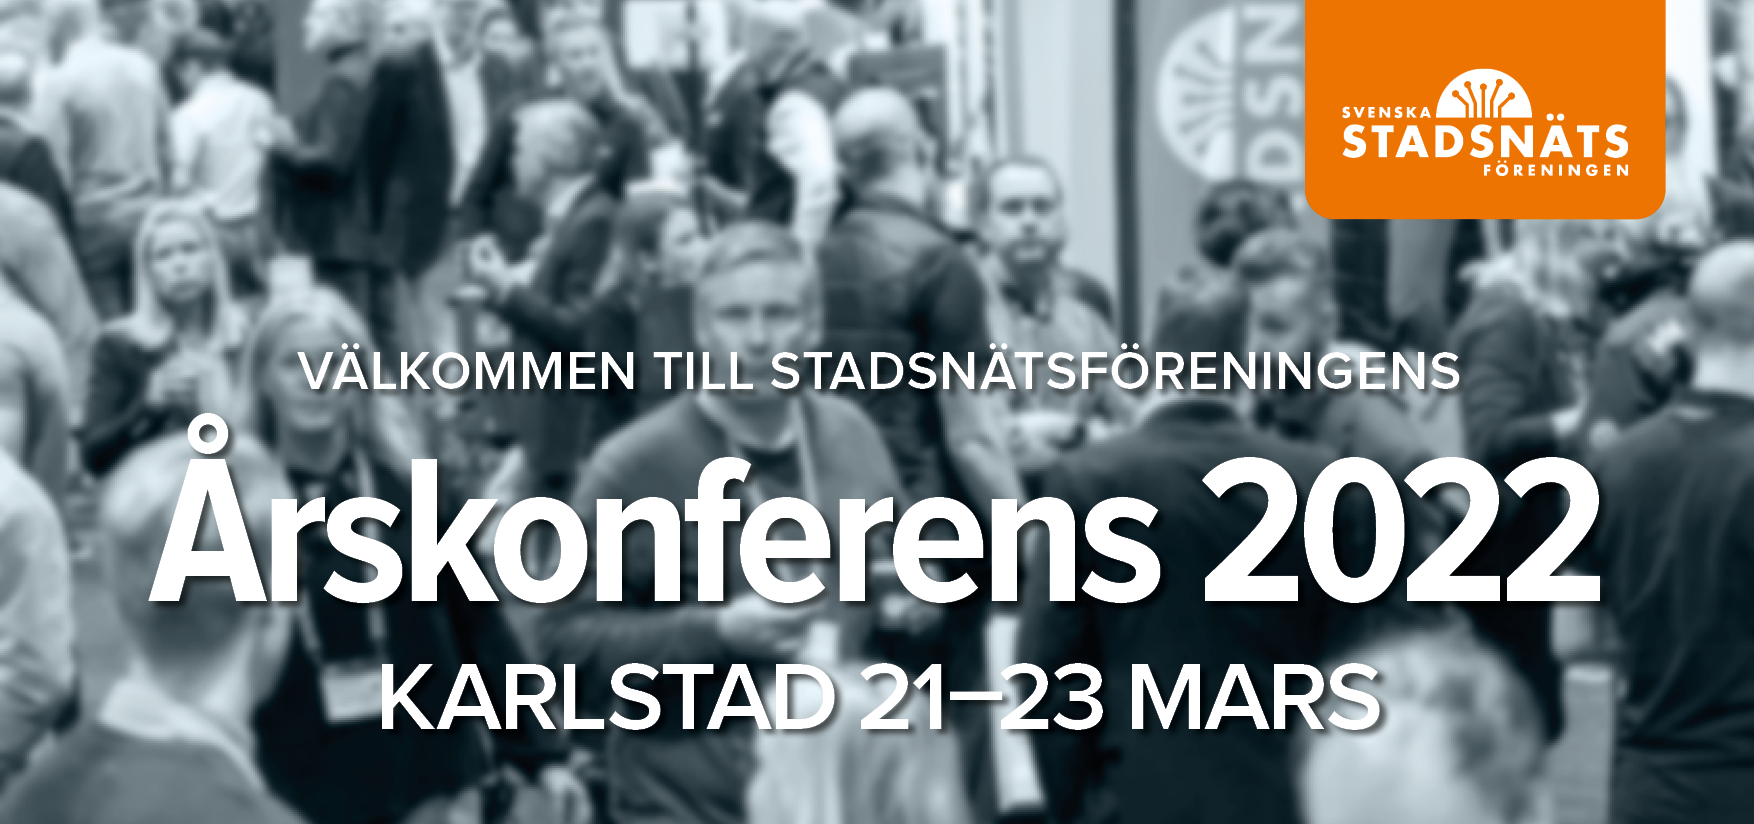 Årskonferensen_header.png